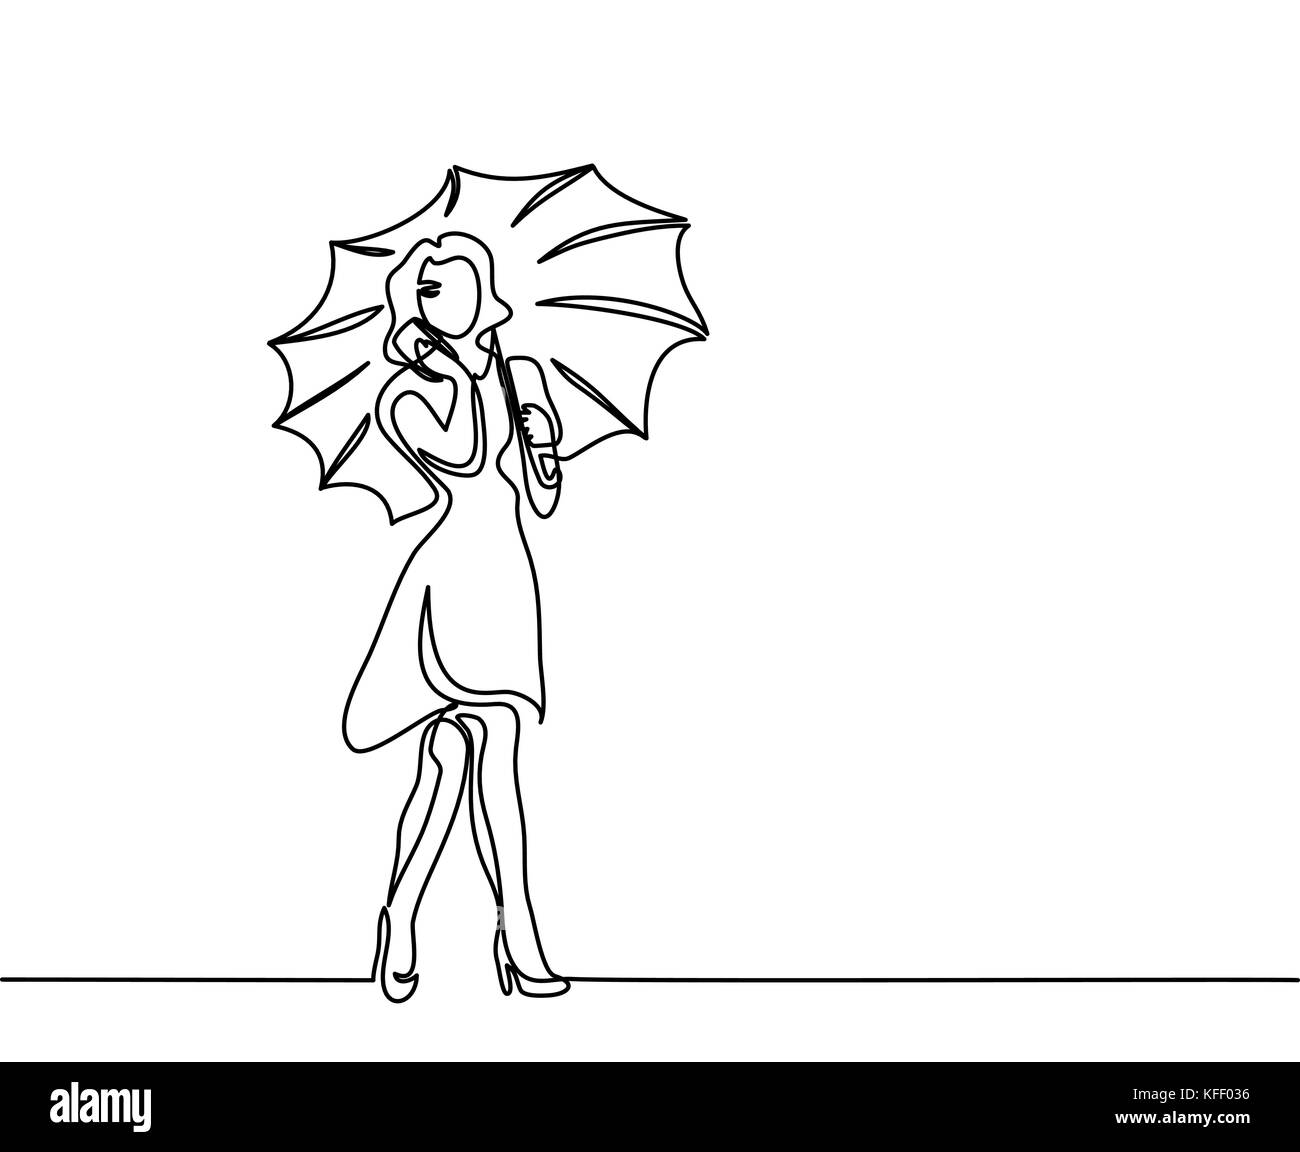 Glückliche Frau Gespräch per Telefon mit Regenschirm. Durchgehende Linie zeichnen. Vector Illustration. Stock Vektor